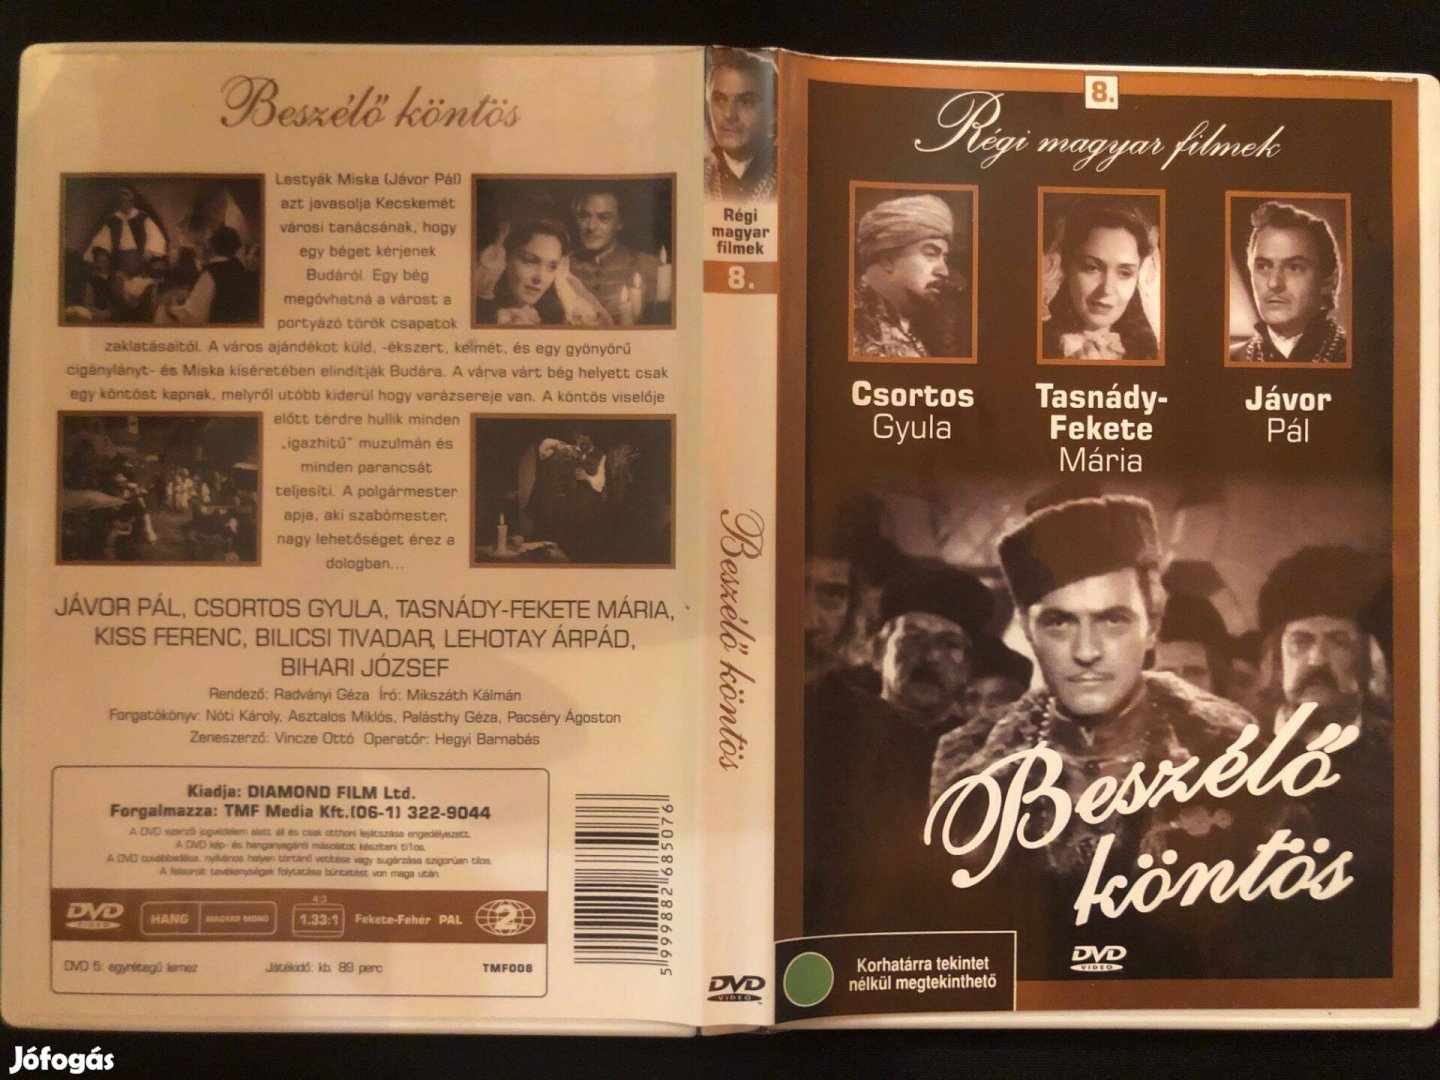 Beszélő köntös DVD (karcmentes, Csortos Gyula, Jávor Pál)